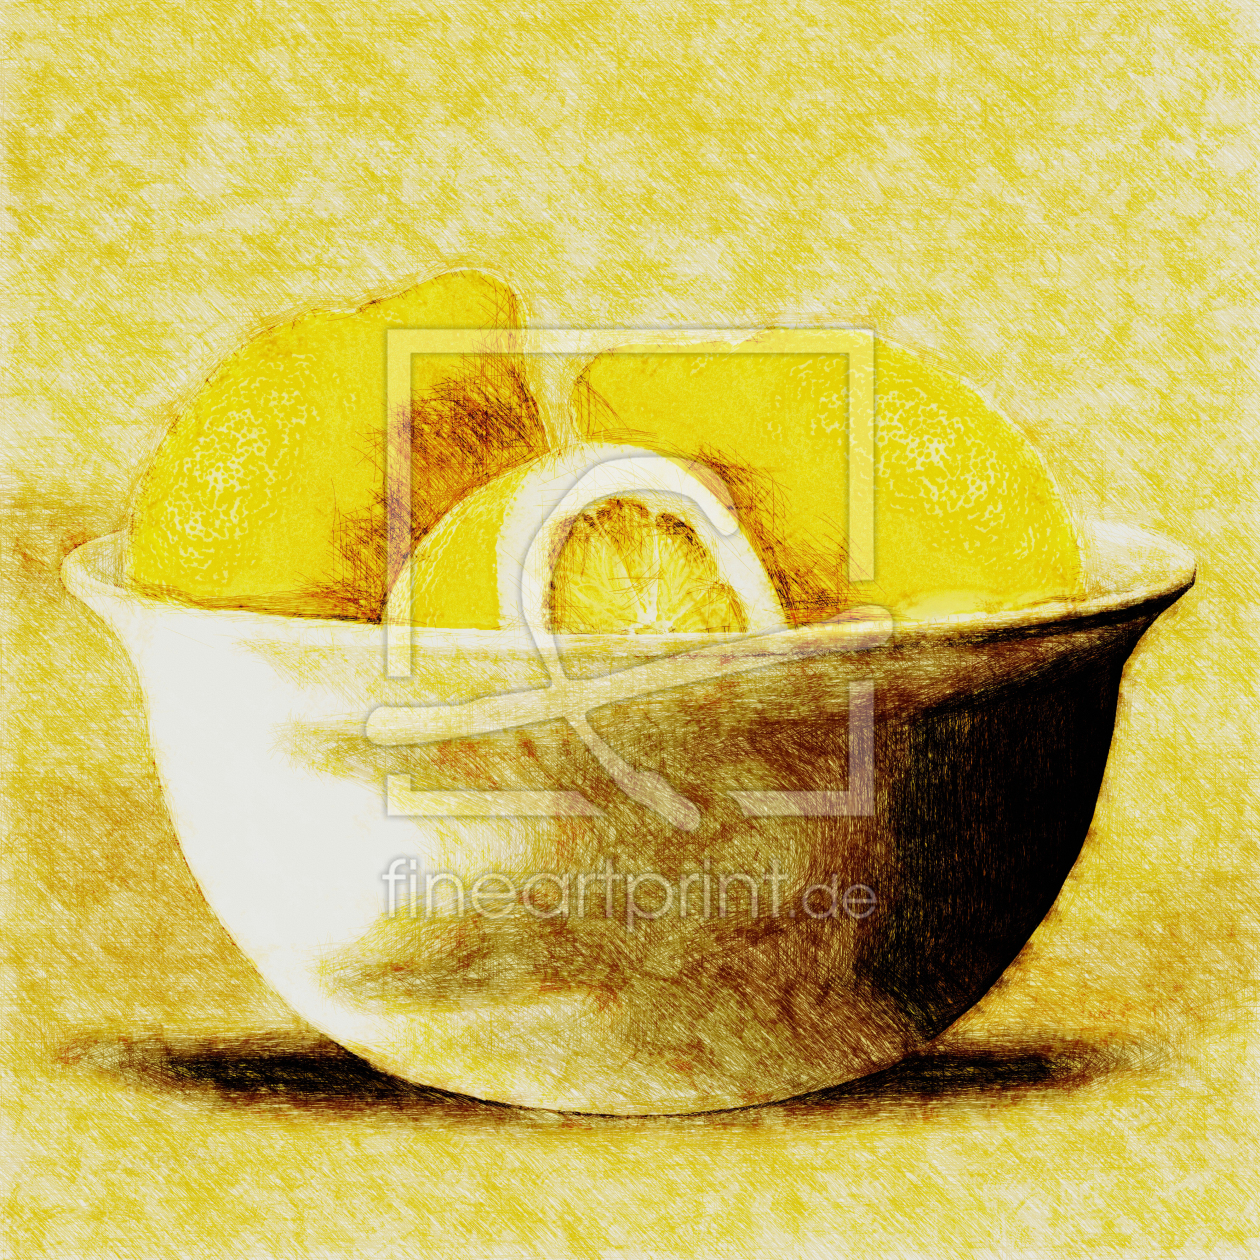 Bild-Nr.: 10514247 Zitronenfrüchte erstellt von DagmarMarina